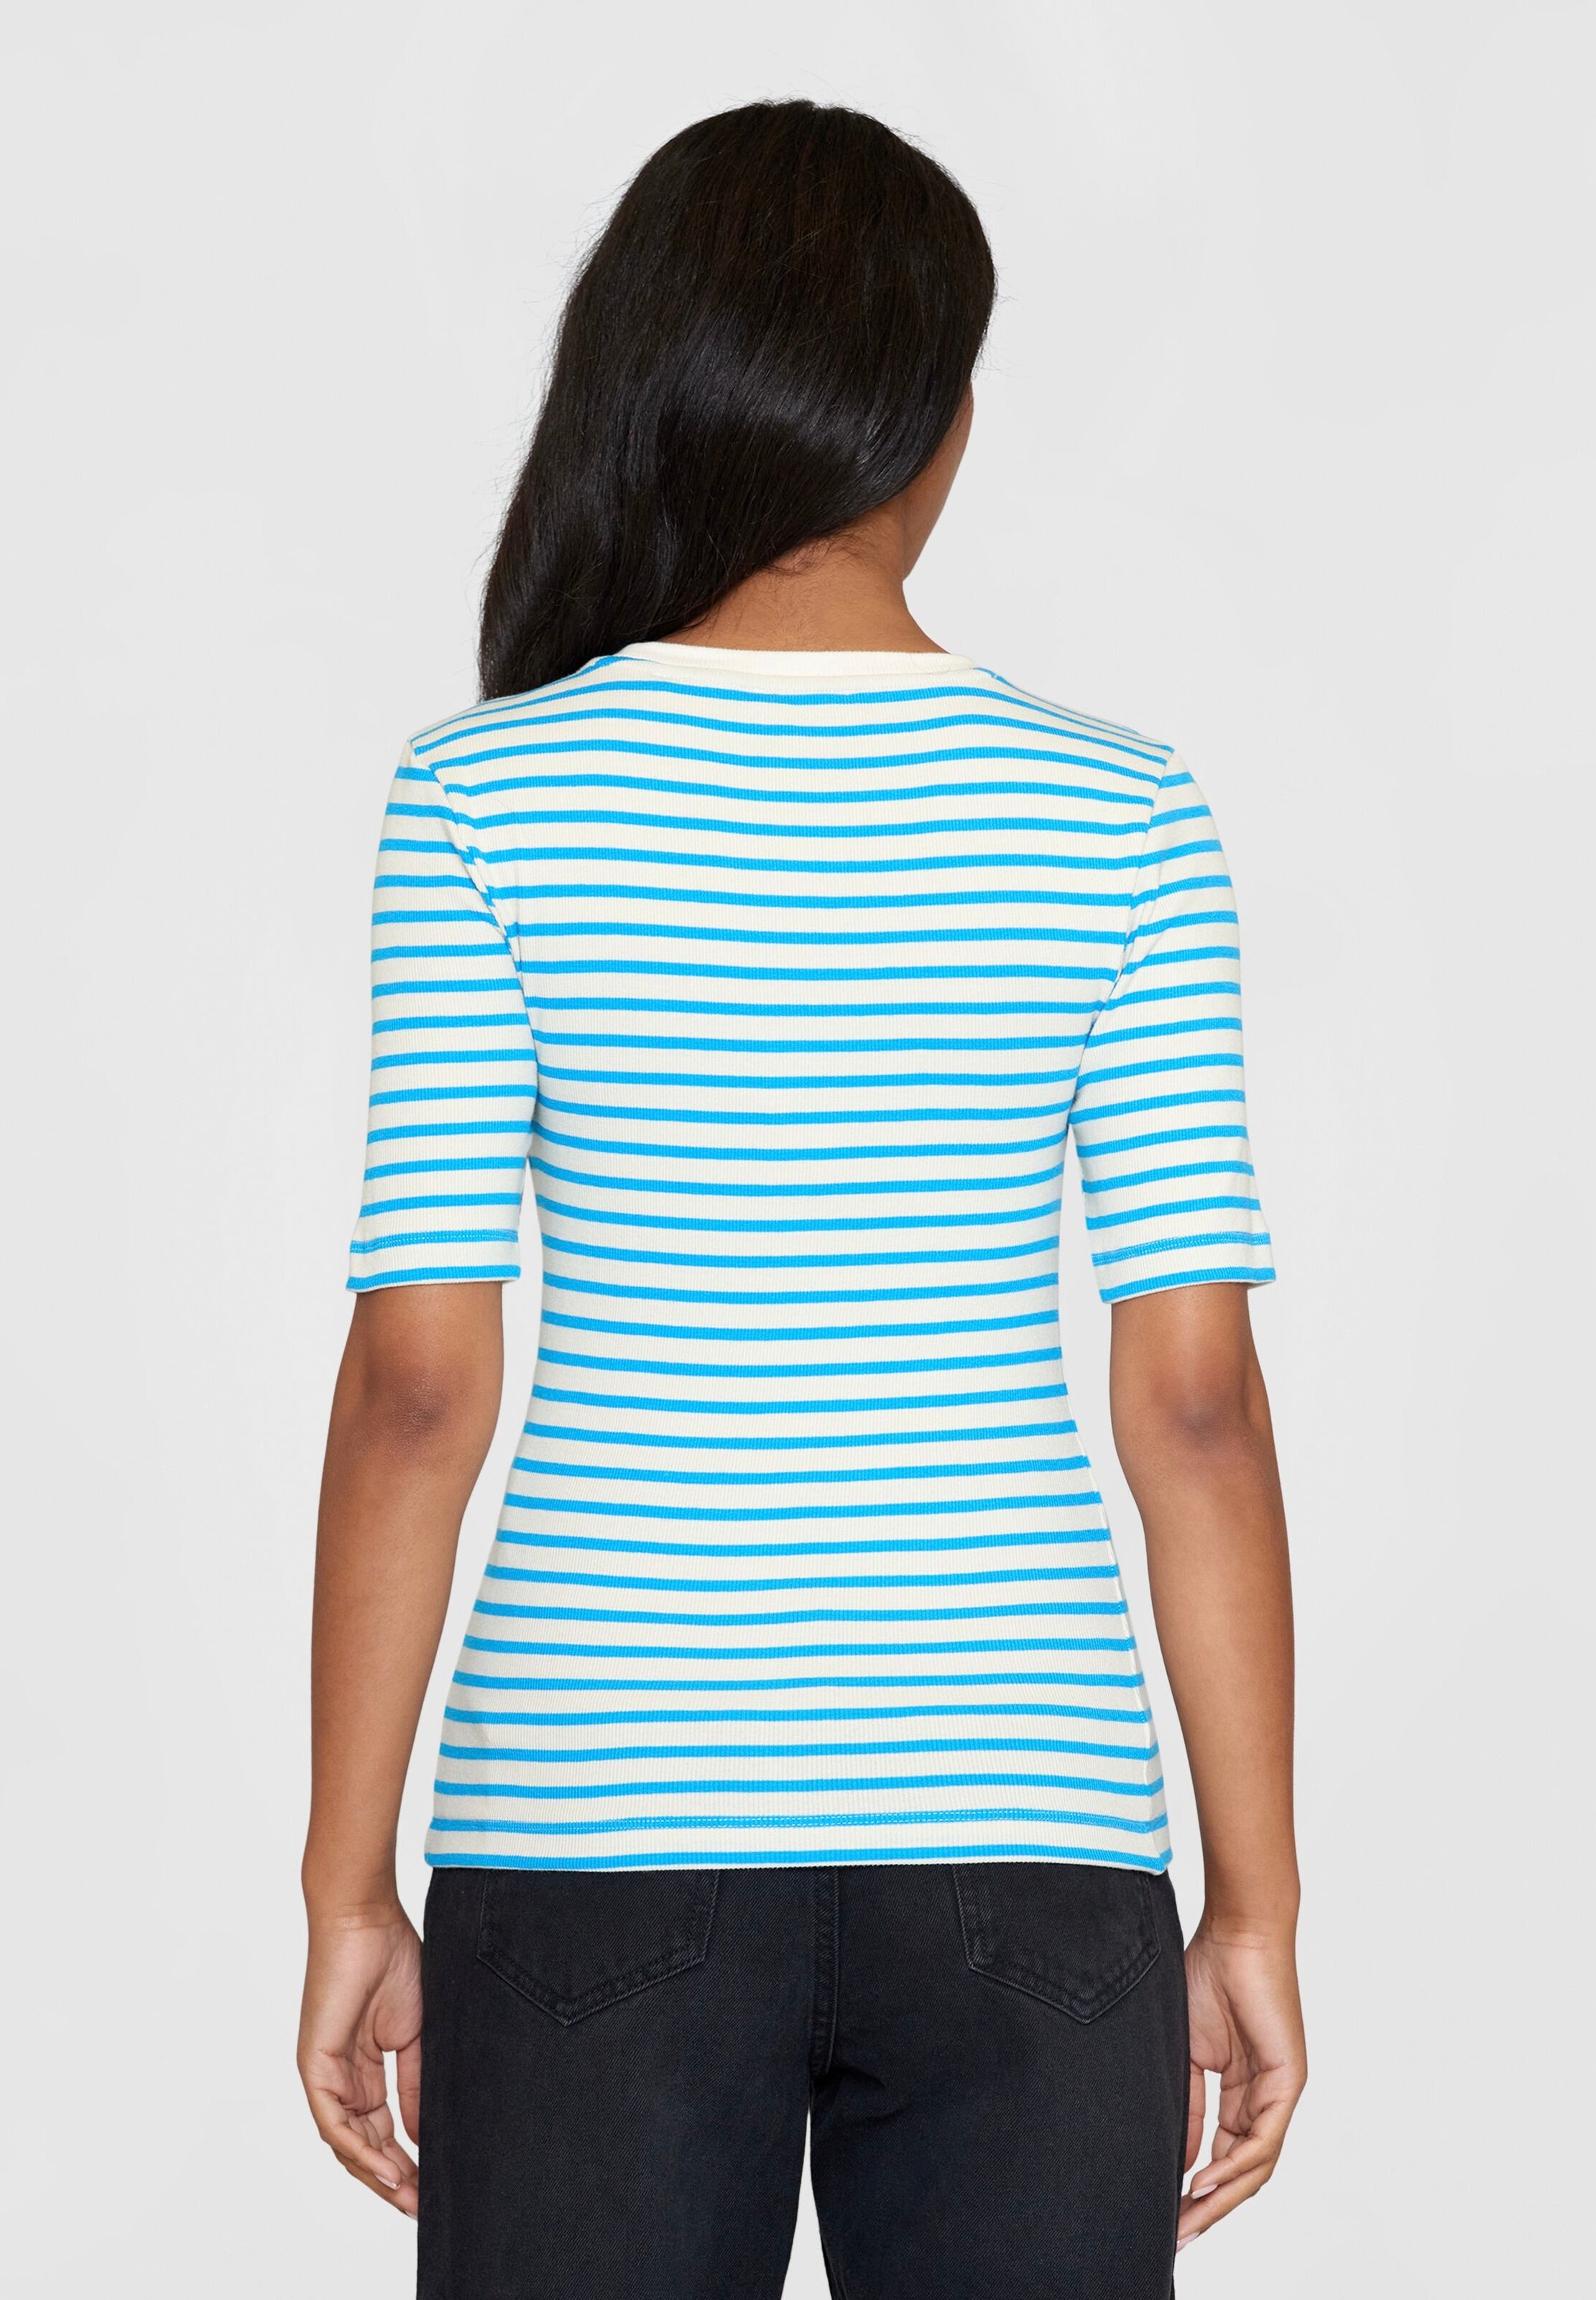 striped rib t-shirt blue stripe